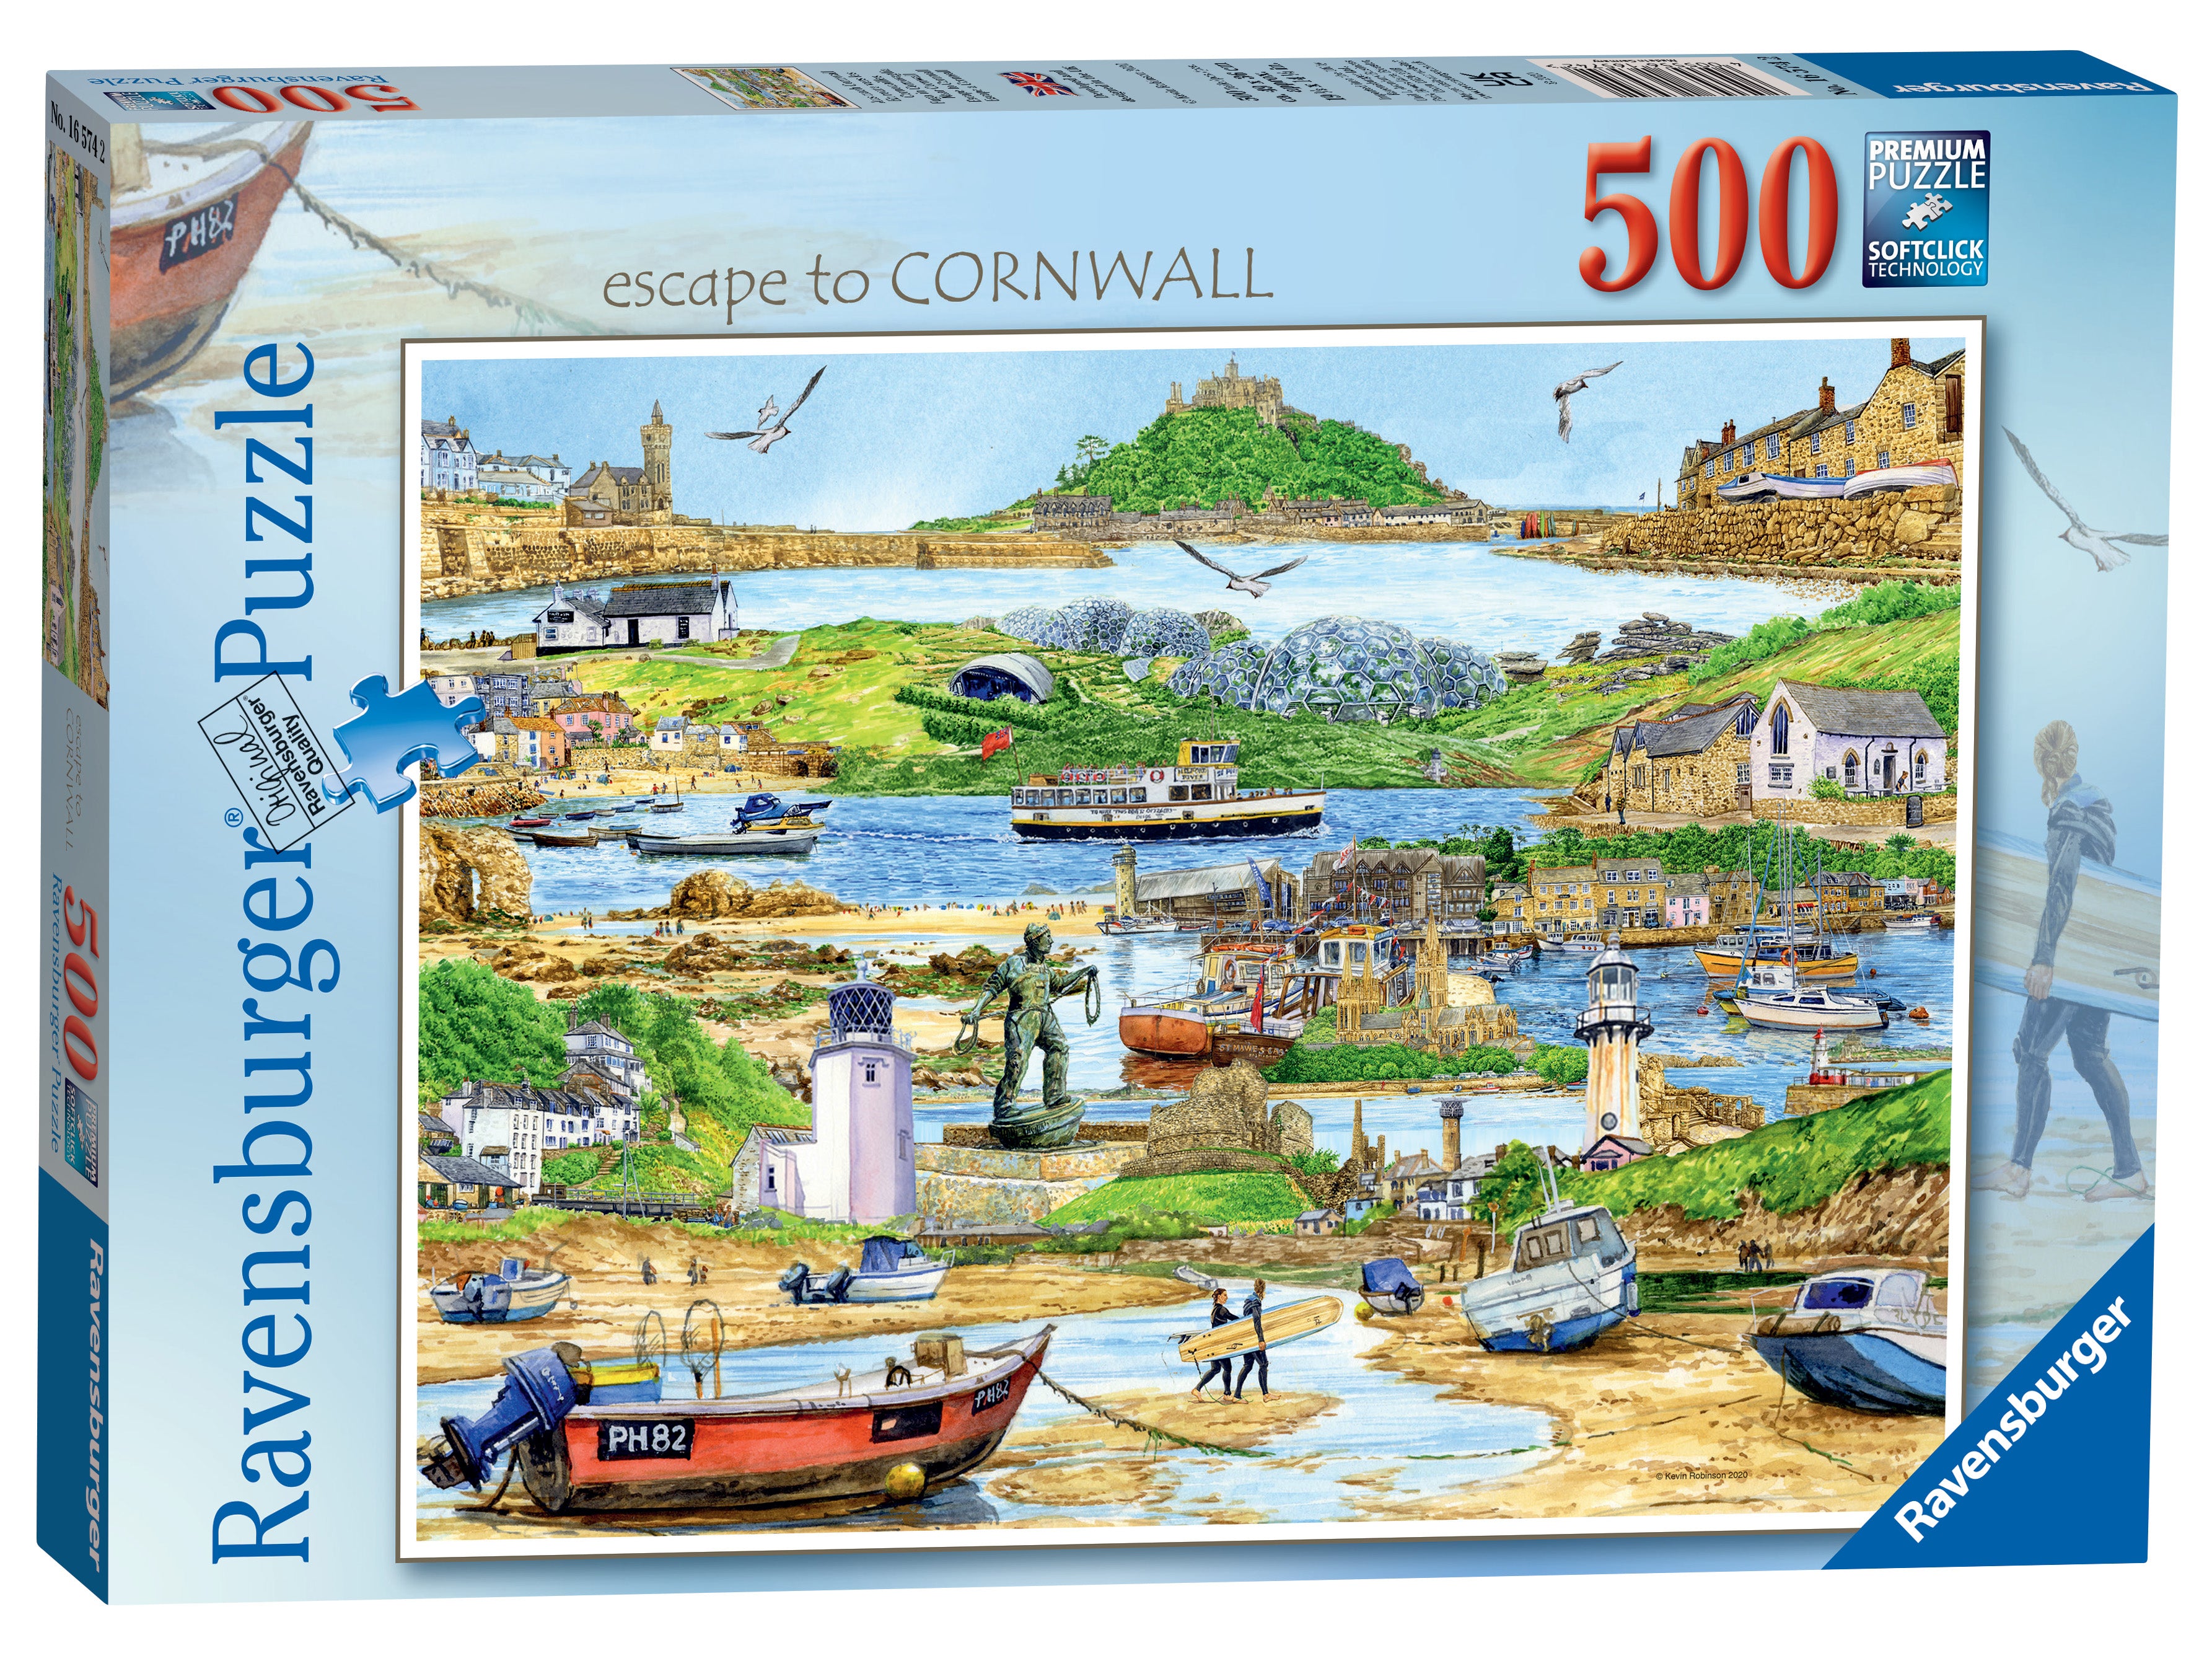 Escape to Cornwall        500p